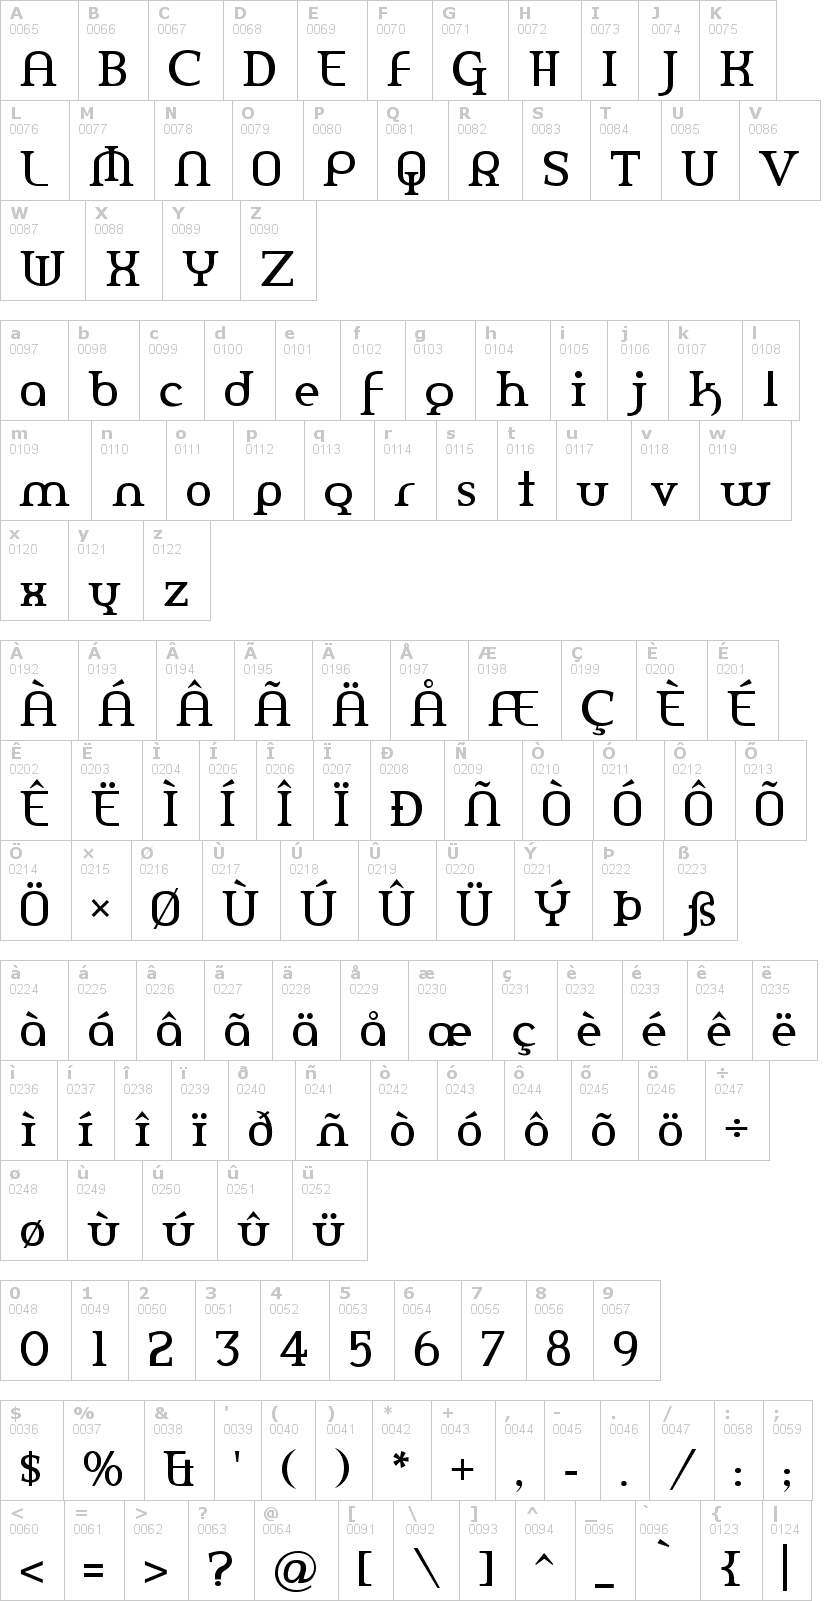 Lettere dell'alfabeto del font amerika con le quali è possibile realizzare adesivi prespaziati